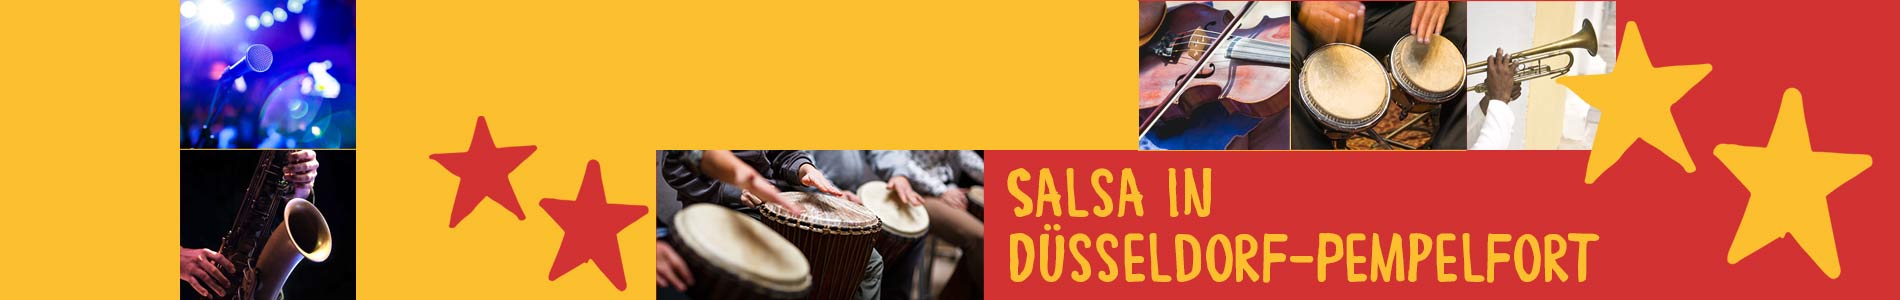 Salsa in Düsseldorf-Pempelfort – Salsa lernen und tanzen, Tanzkurse, Partys, Veranstaltungen